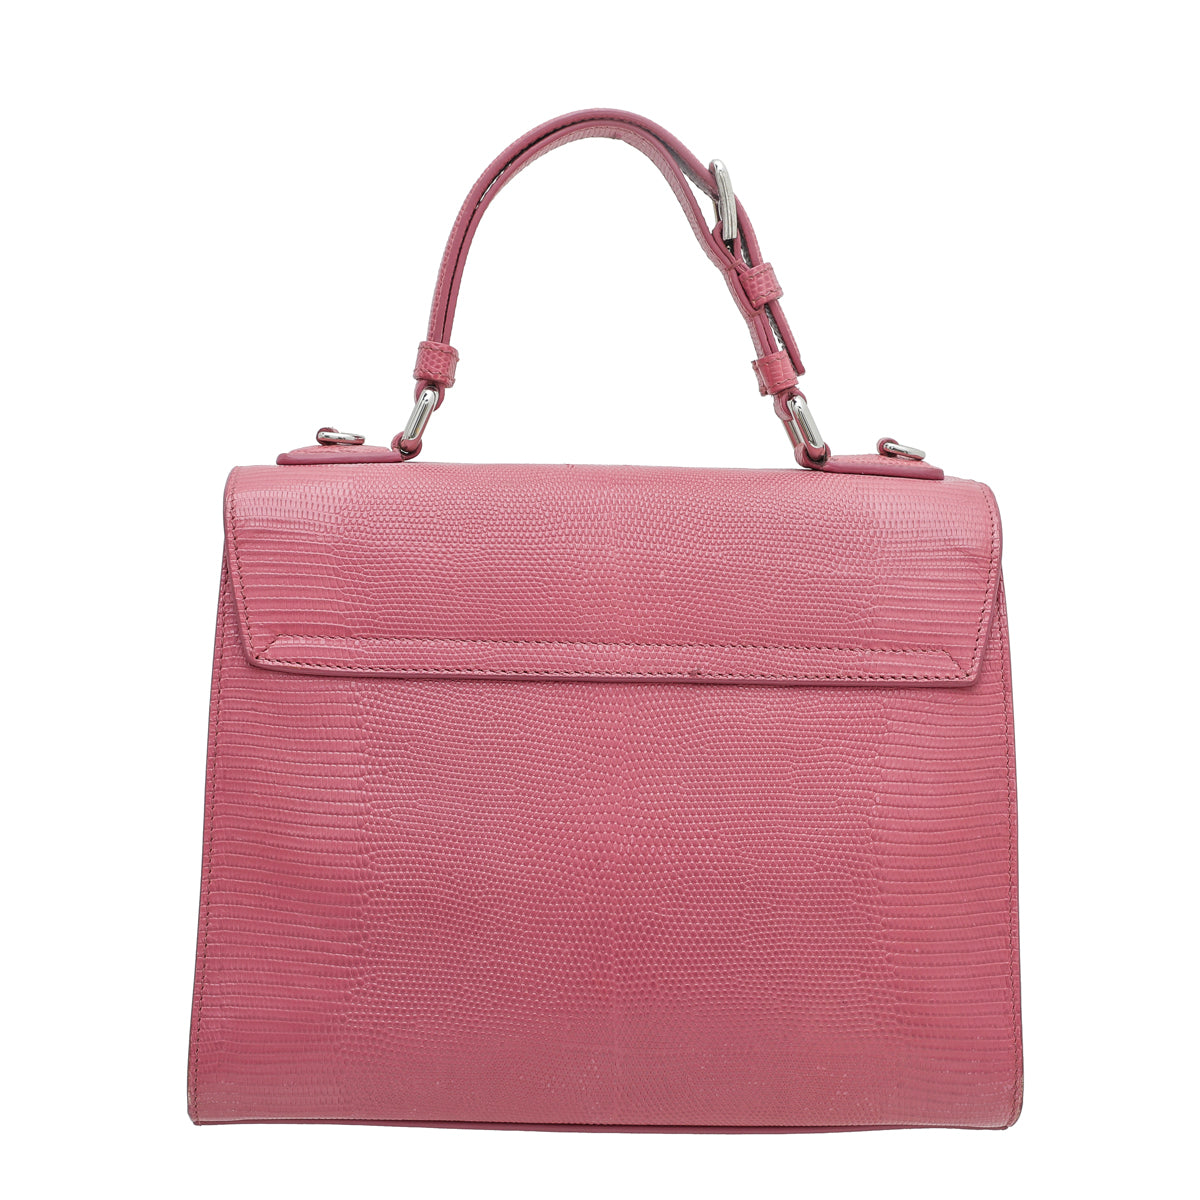 Dolce & Gabbana Pink Lizard Embossed D&G Miss Monica Bag